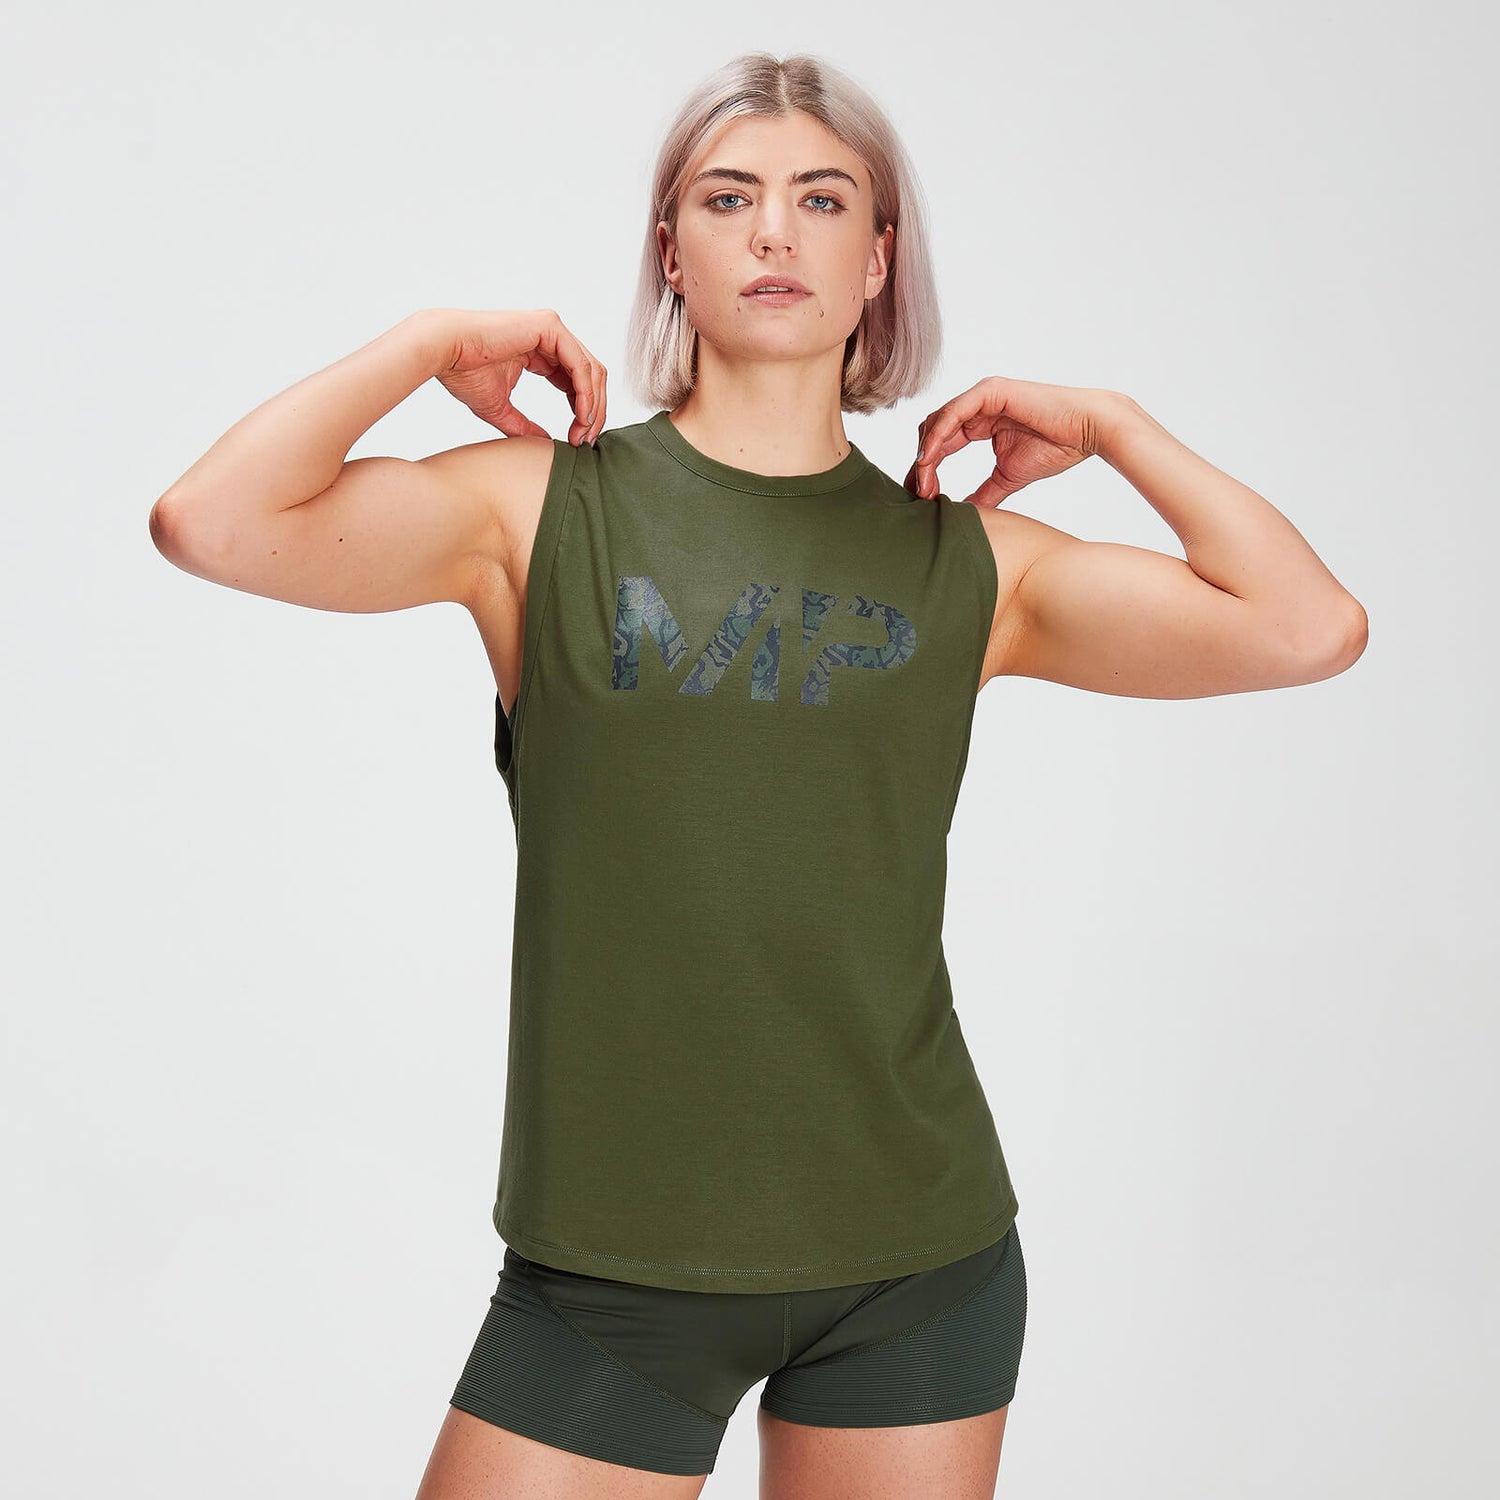 Damska koszulka bez rękawów z obniżonymi wycięciami na ramiona drirelease® – Leaf Green